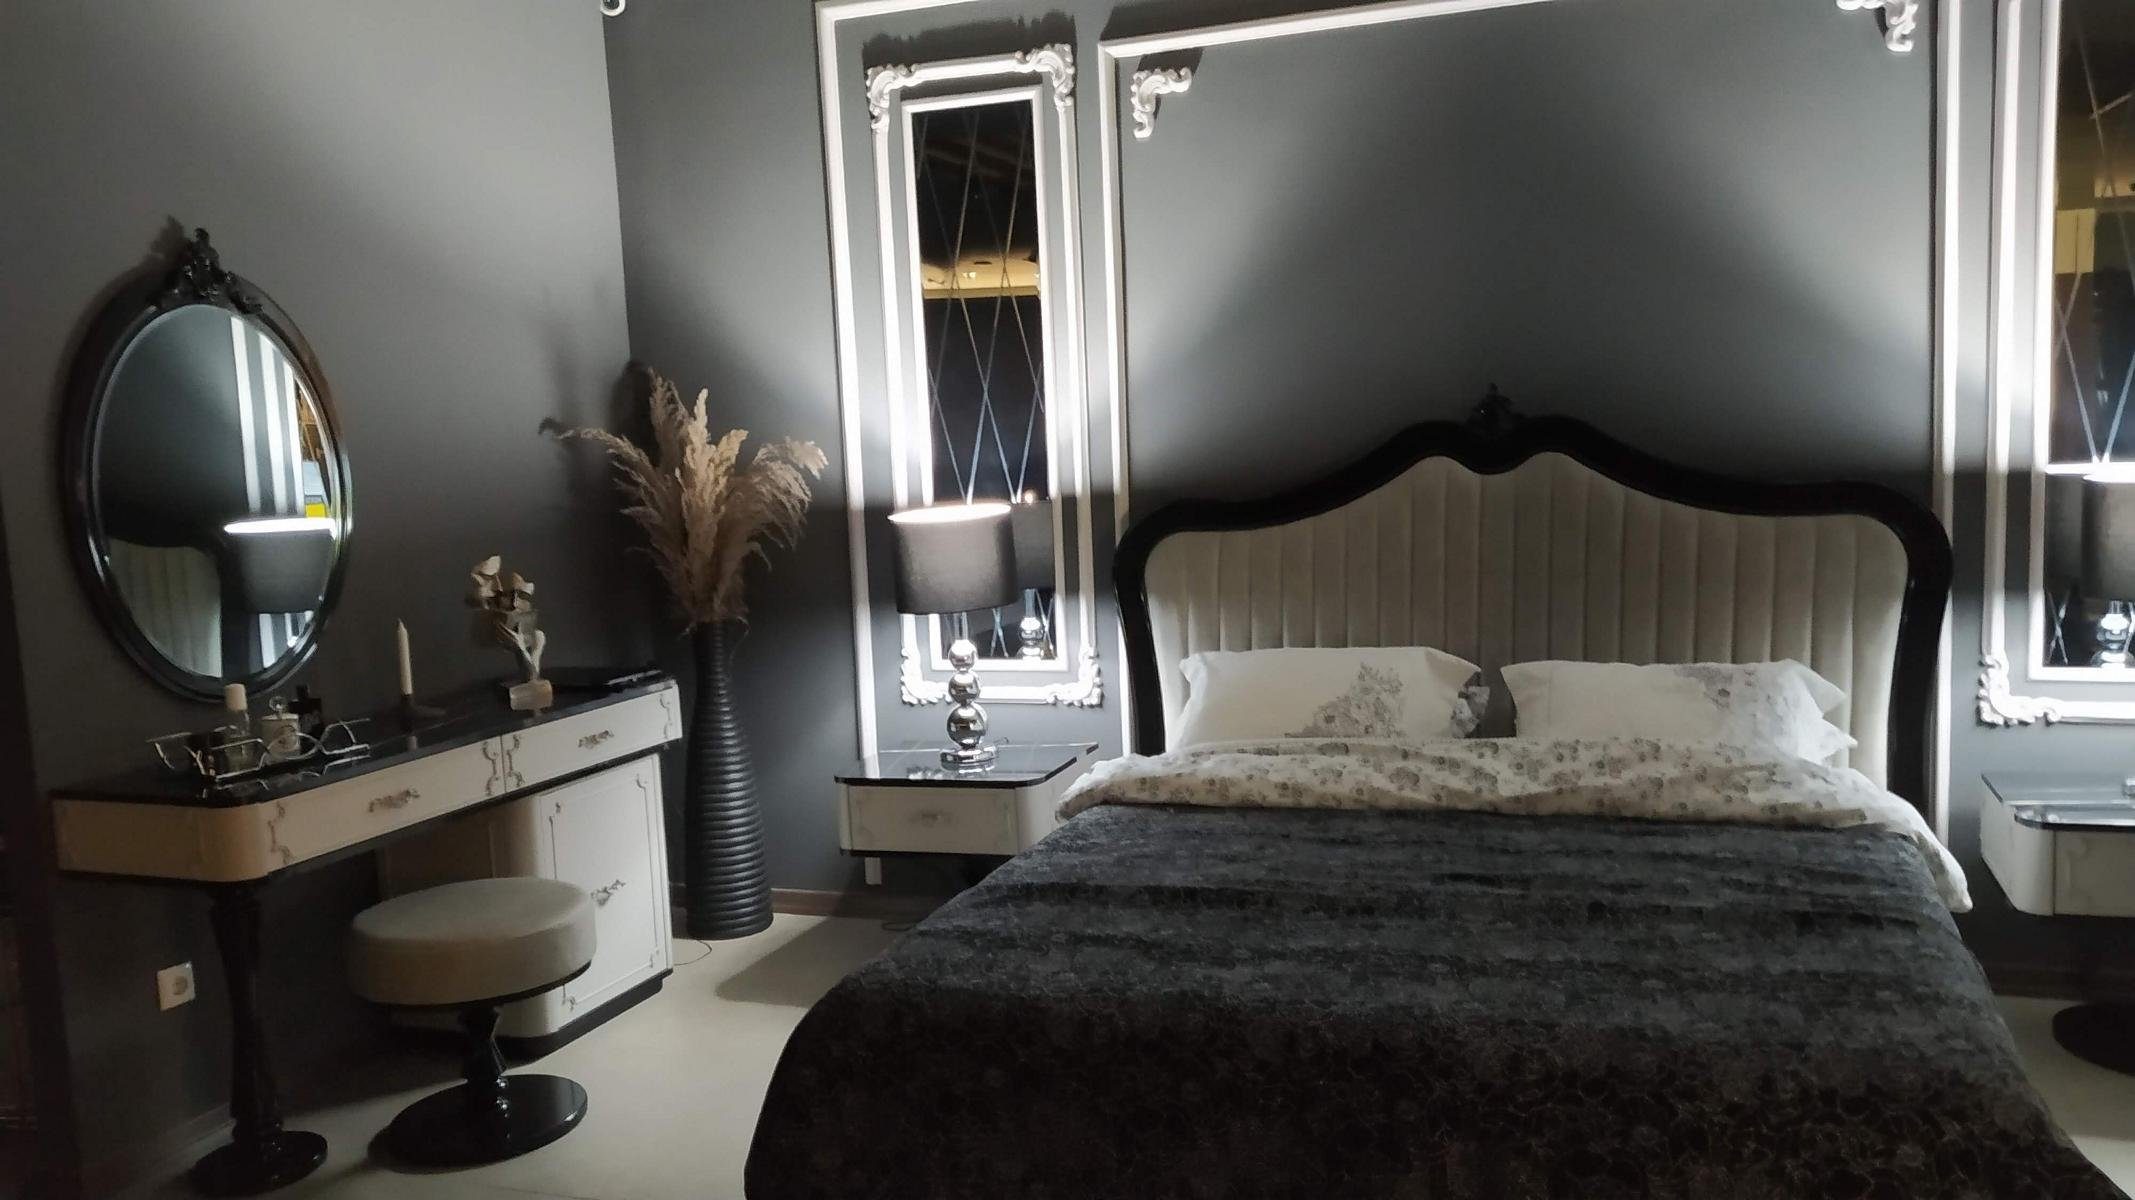 (Nur Beige Bett), Modern Made Design Europe in Polster Schlafzimmer Luxus Bett Bett JVmoebel